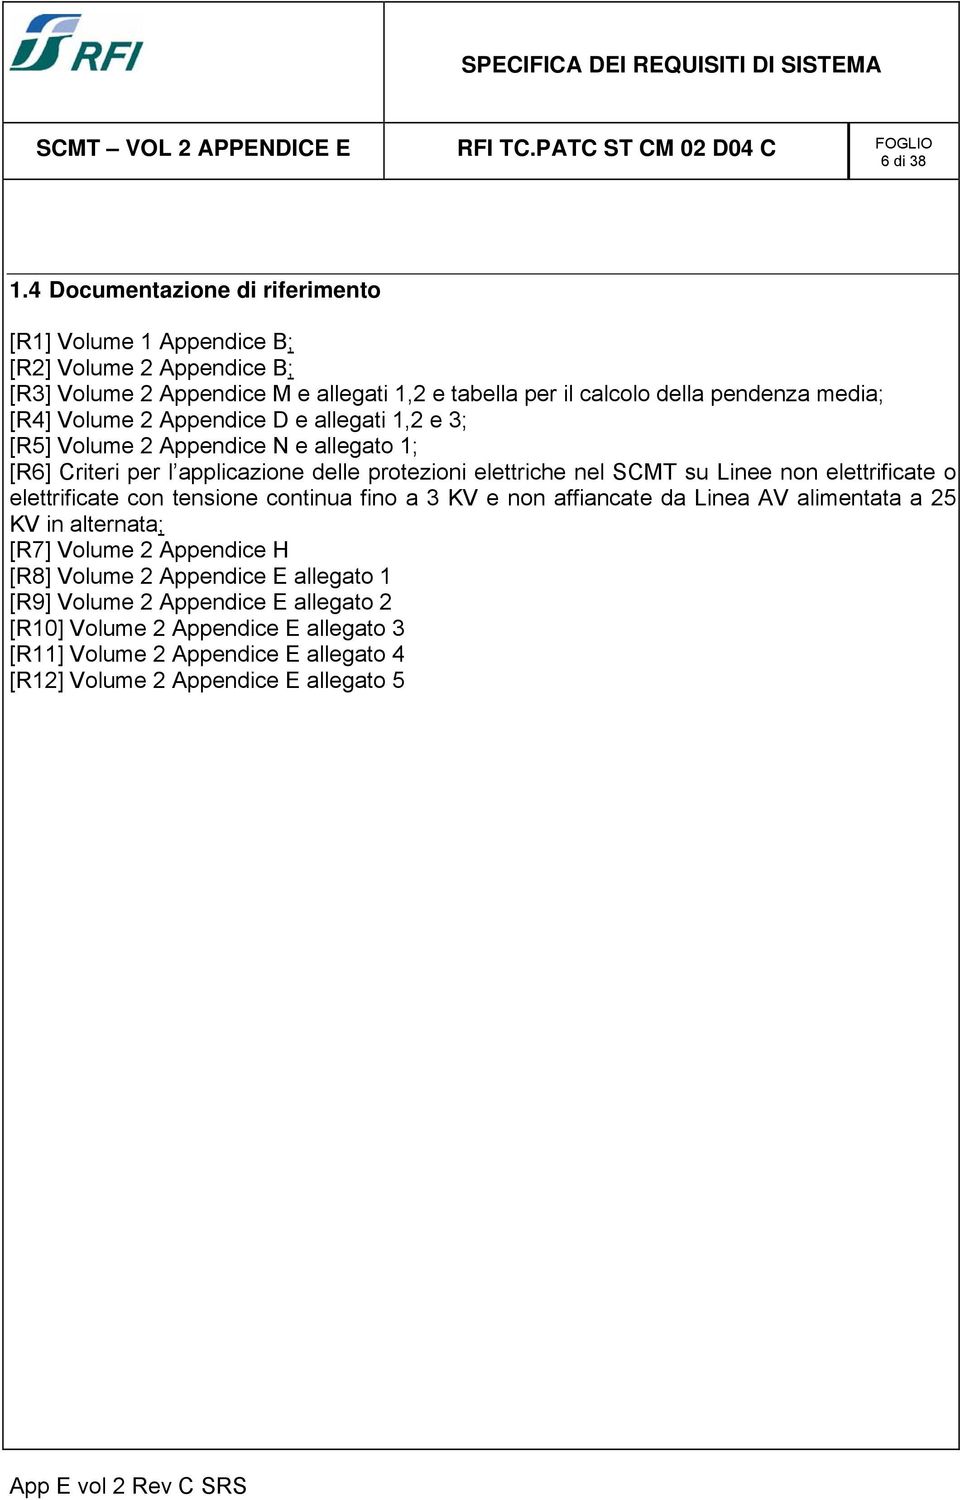 media; [R4] Volume 2 Appendice D e allegati 1,2 e 3; [R5] Volume 2 Appendice N e allegato 1; [R6] Criteri per l applicazione delle protezioni elettriche nel SCMT su Linee